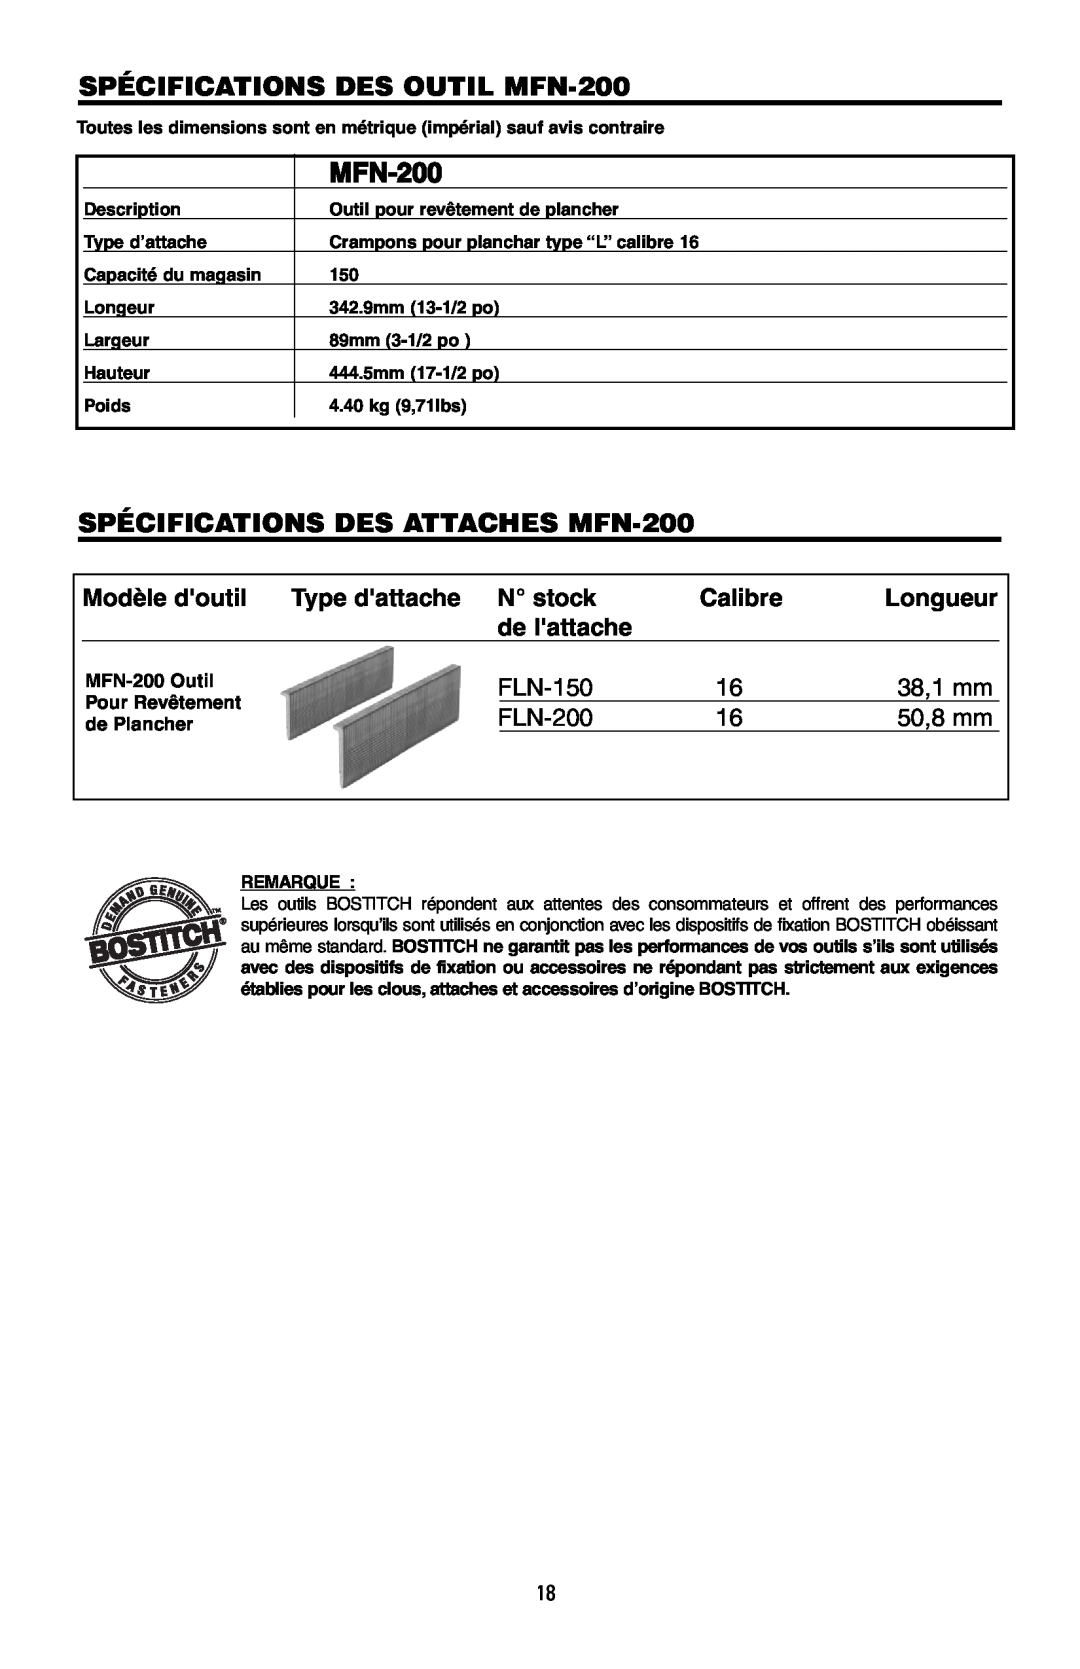 Intec manual SPÉCIFICATIONS DES OUTIL MFN-200, SPÉCIFICATIONS DES ATTACHES MFN-200, 38,1 mm, 50,8 mm 